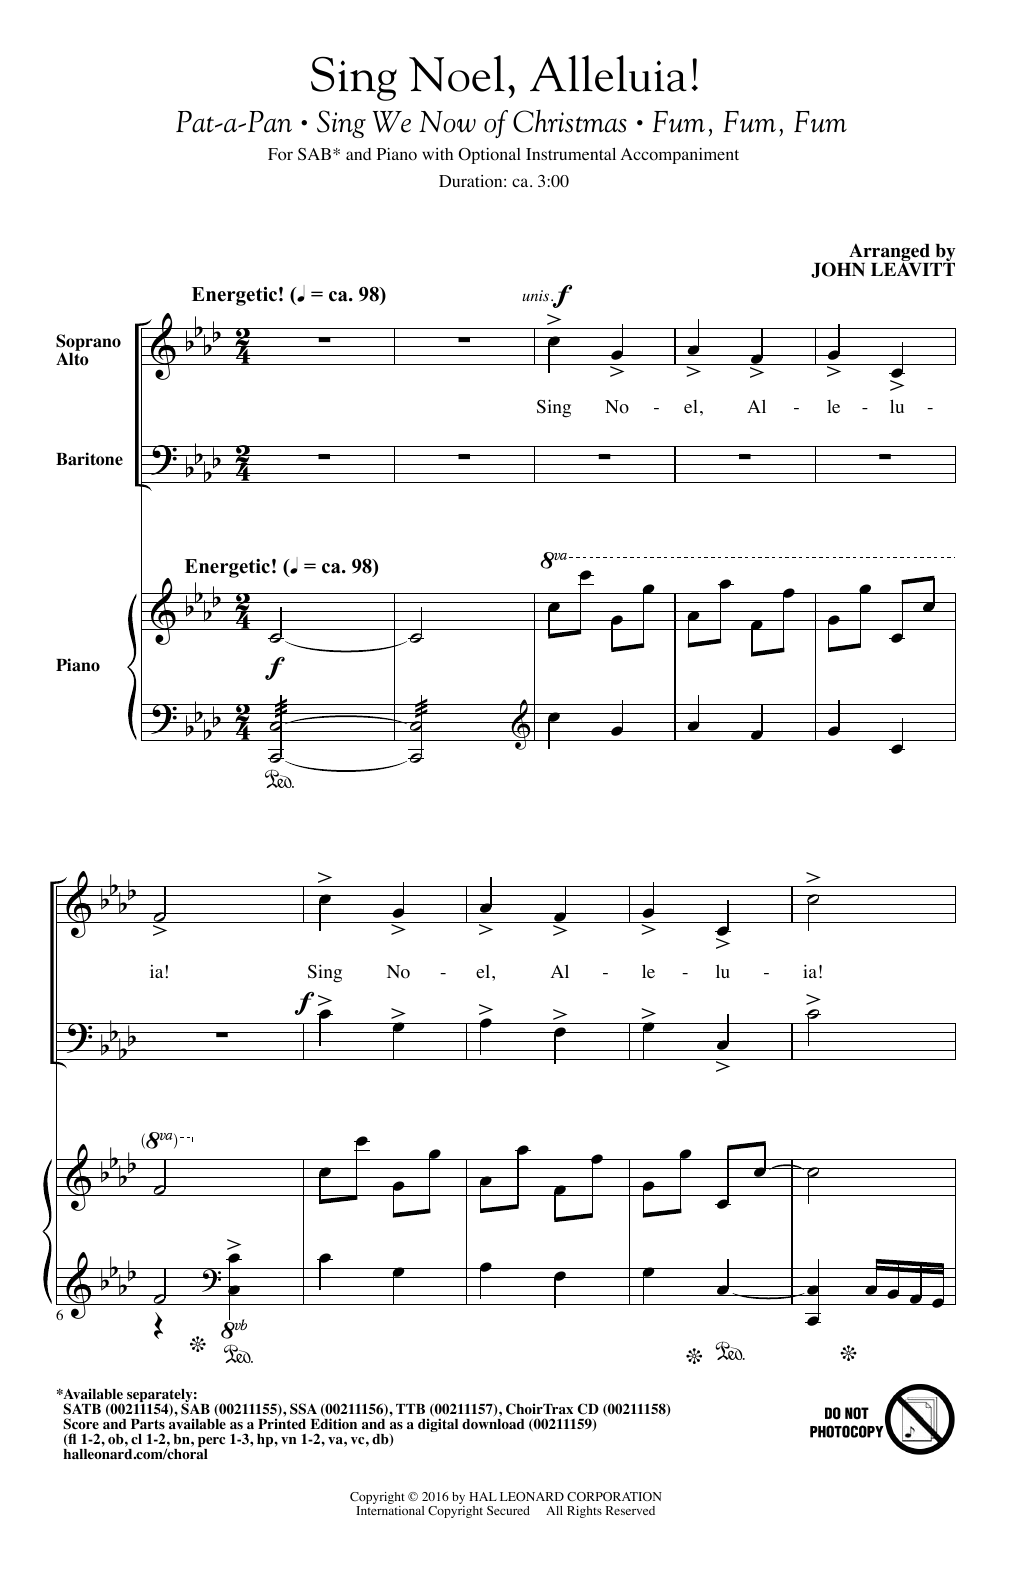 John Leavitt Sing Noel, Alleluia! sheet music notes and chords arranged for SATB Choir